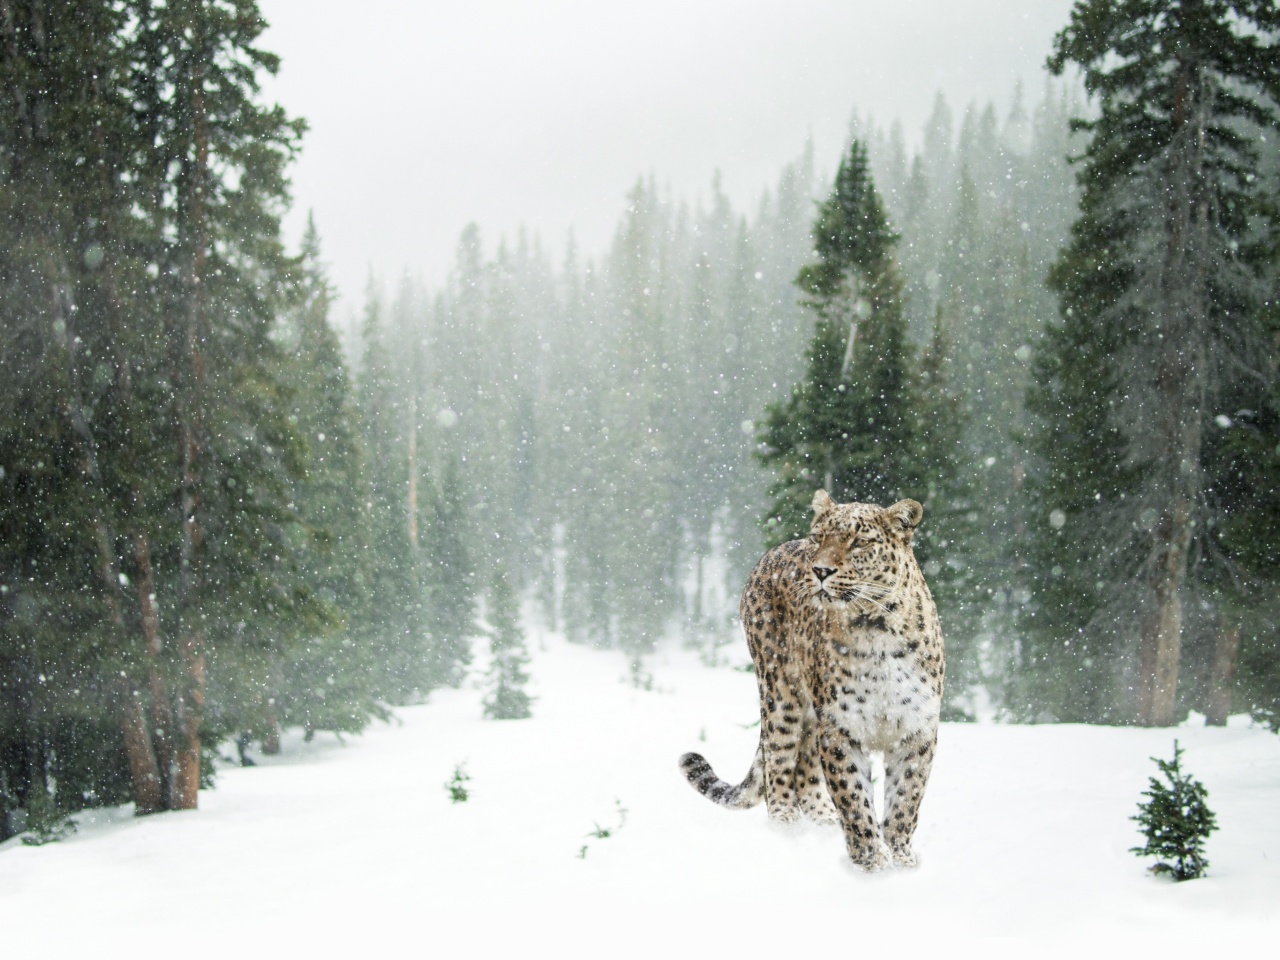 Das Persian leopard in snow Wallpaper 1280x960